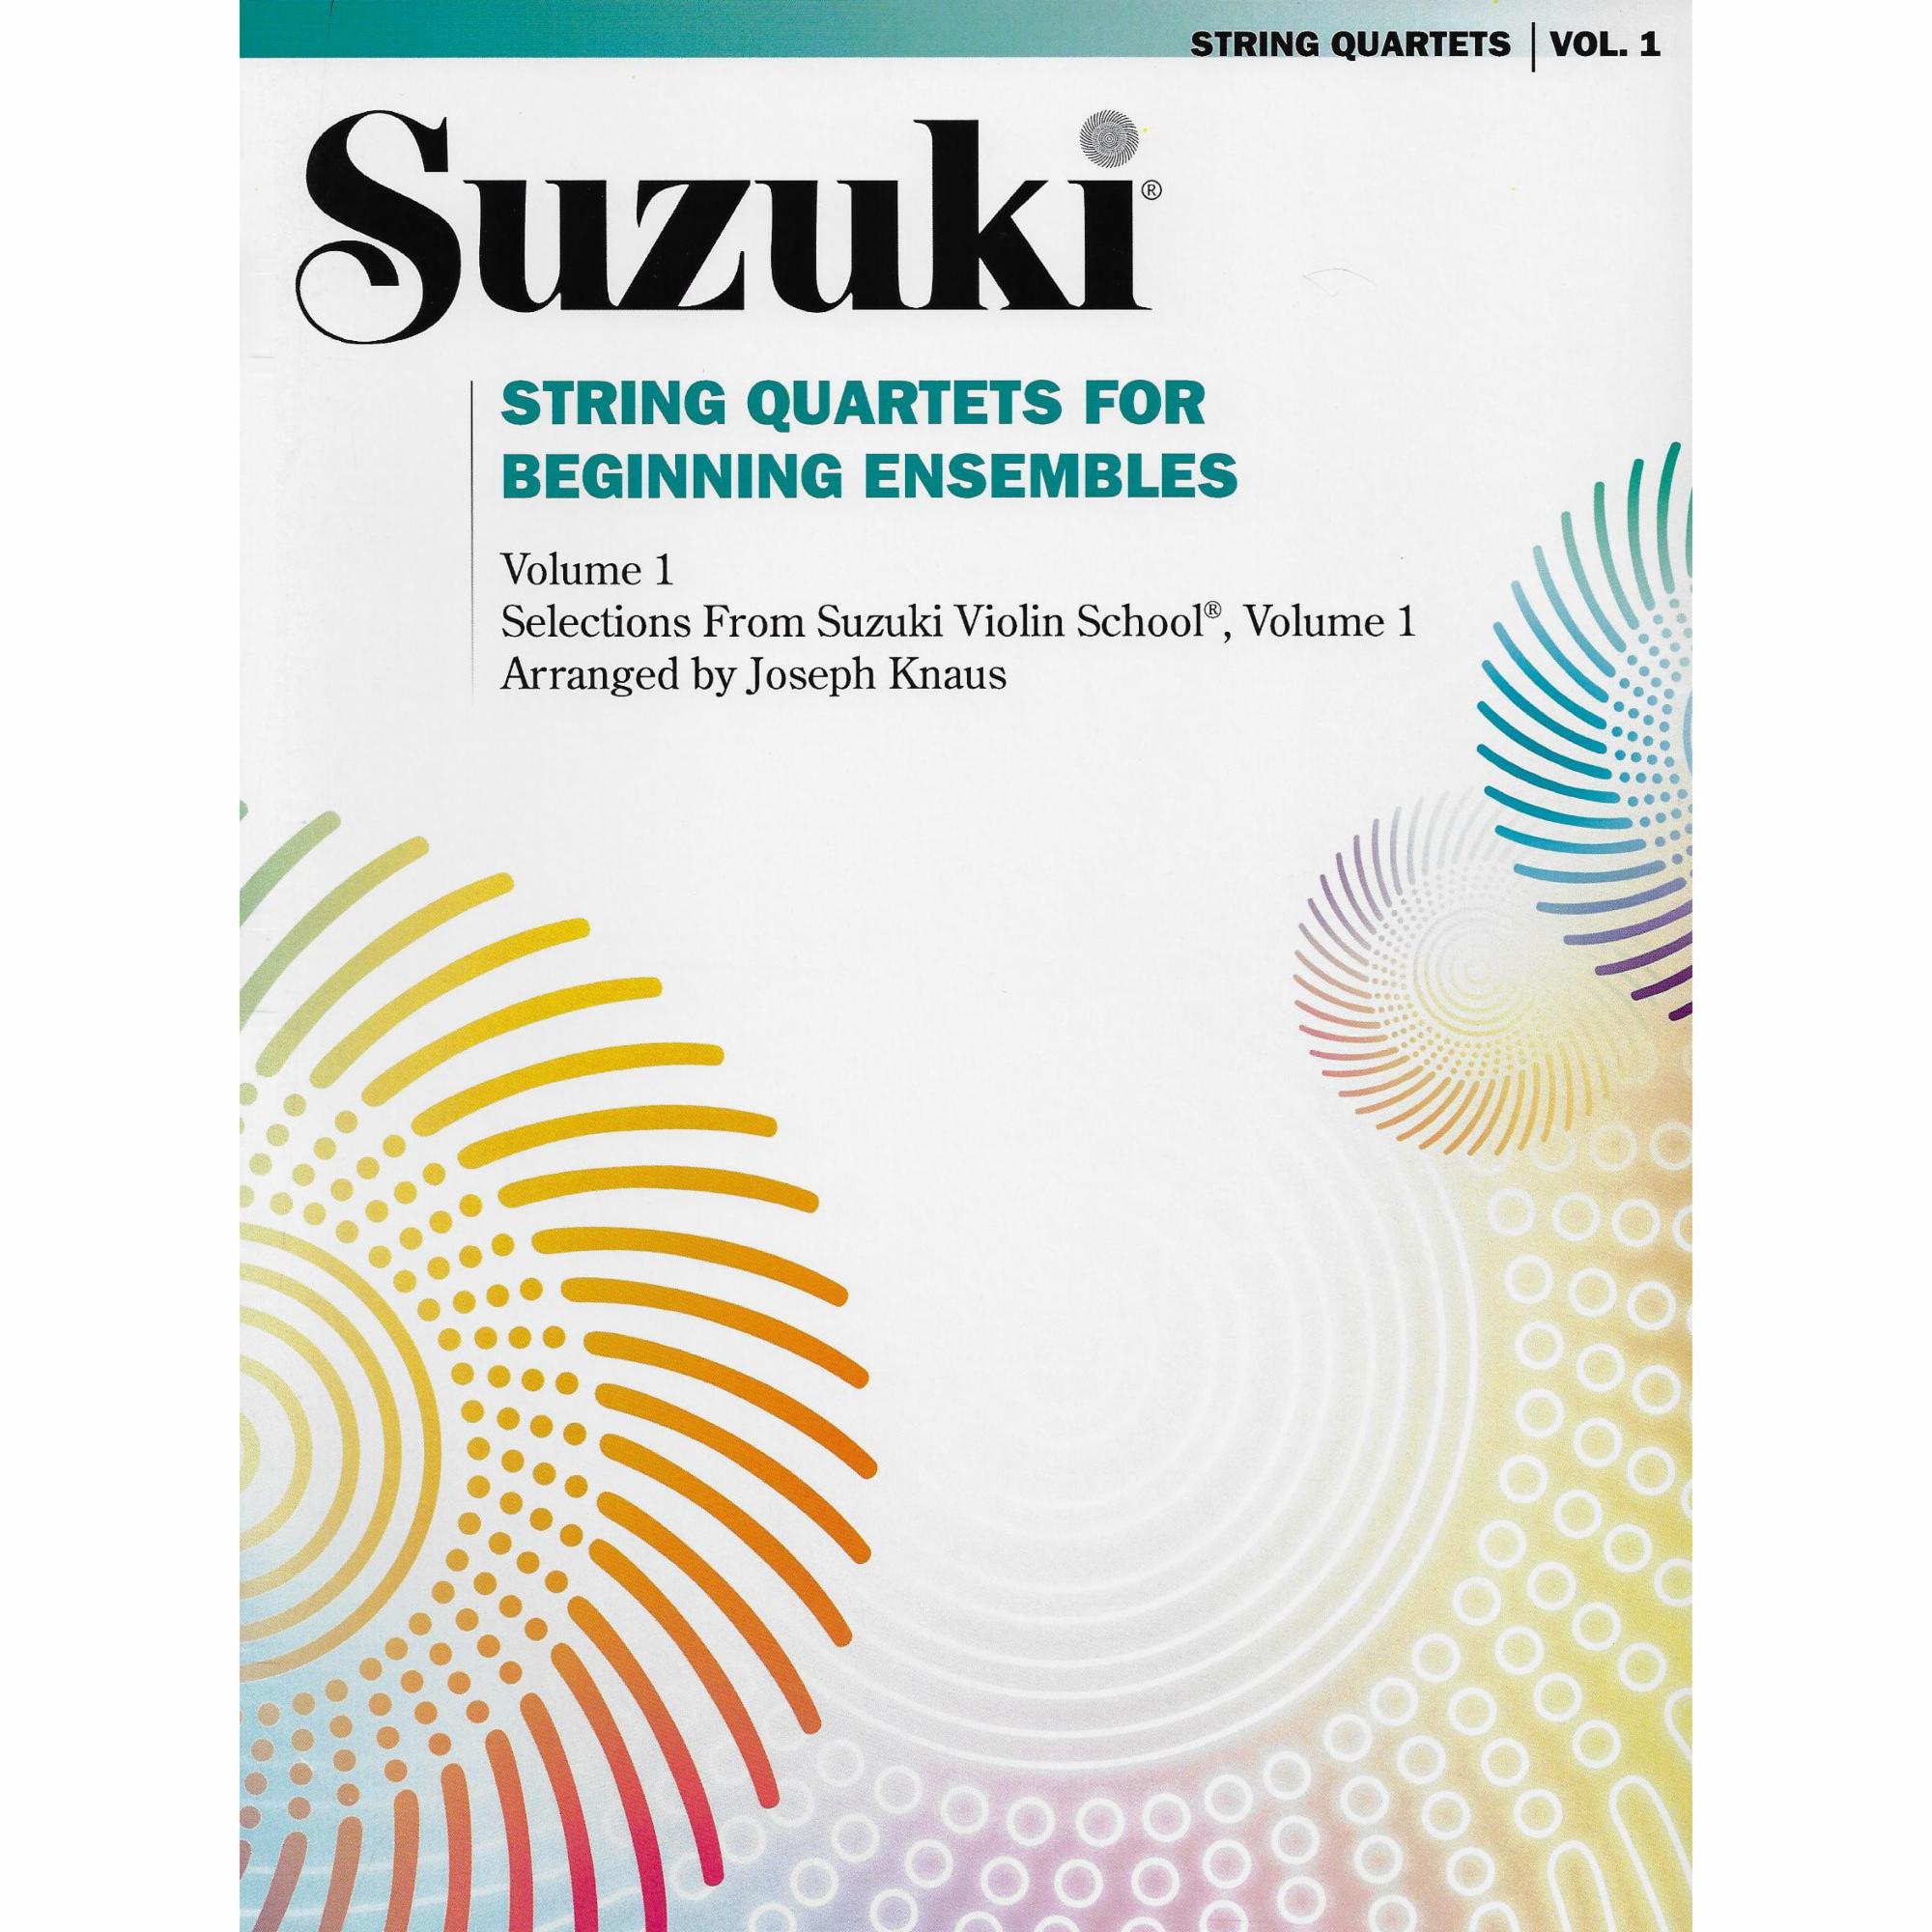 Suzuki: String Quartets for Beginning Ensembles, Volumes 1-3